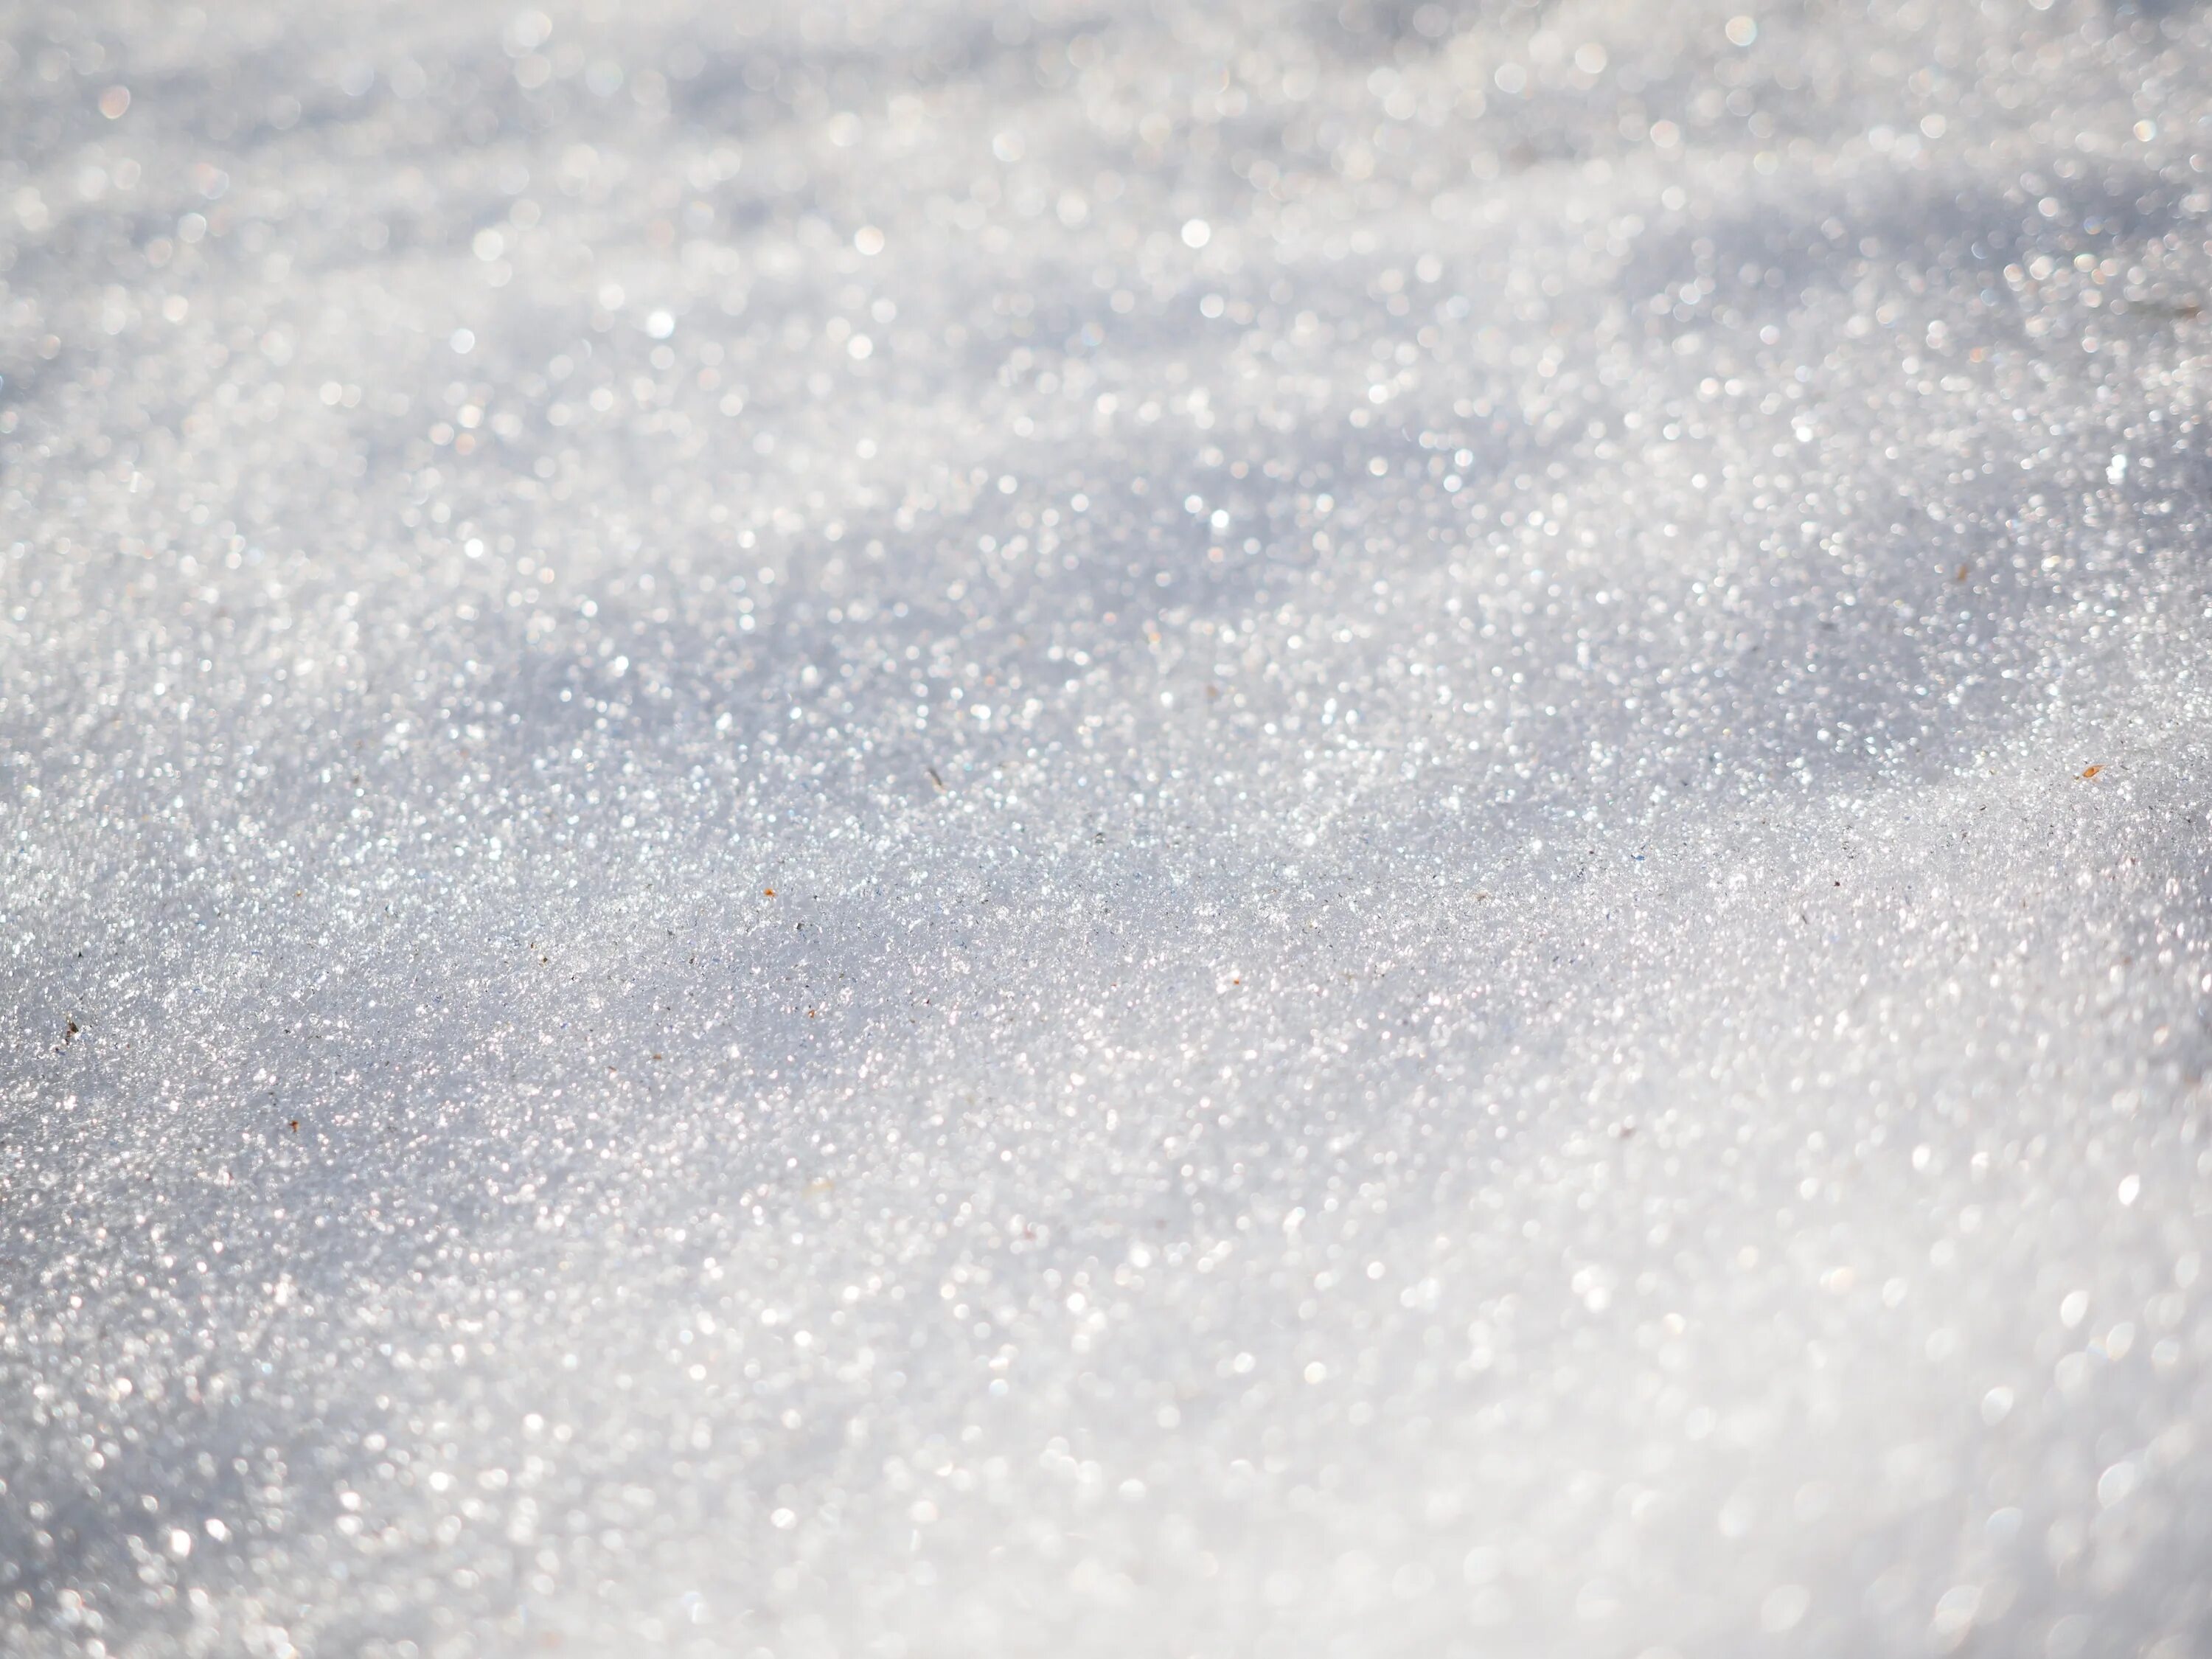 Мелкий снежок. Снег текстура. Снег для фотошопа. Снег фактура. Снежный фон.